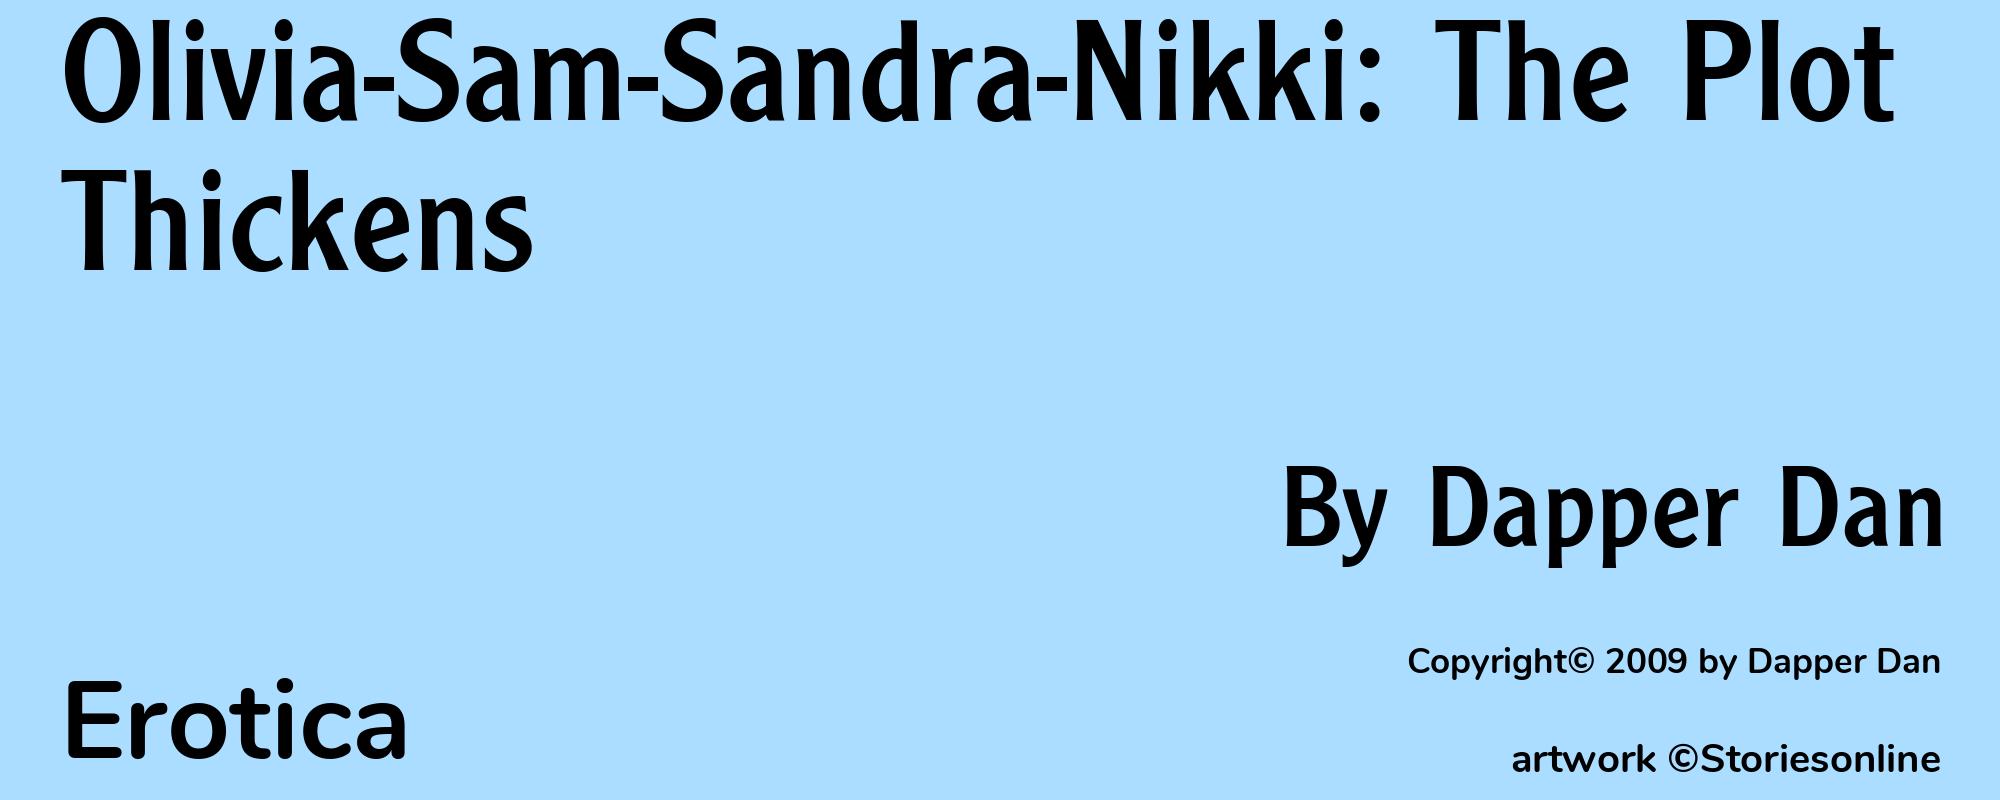 Olivia-Sam-Sandra-Nikki: The Plot Thickens - Cover